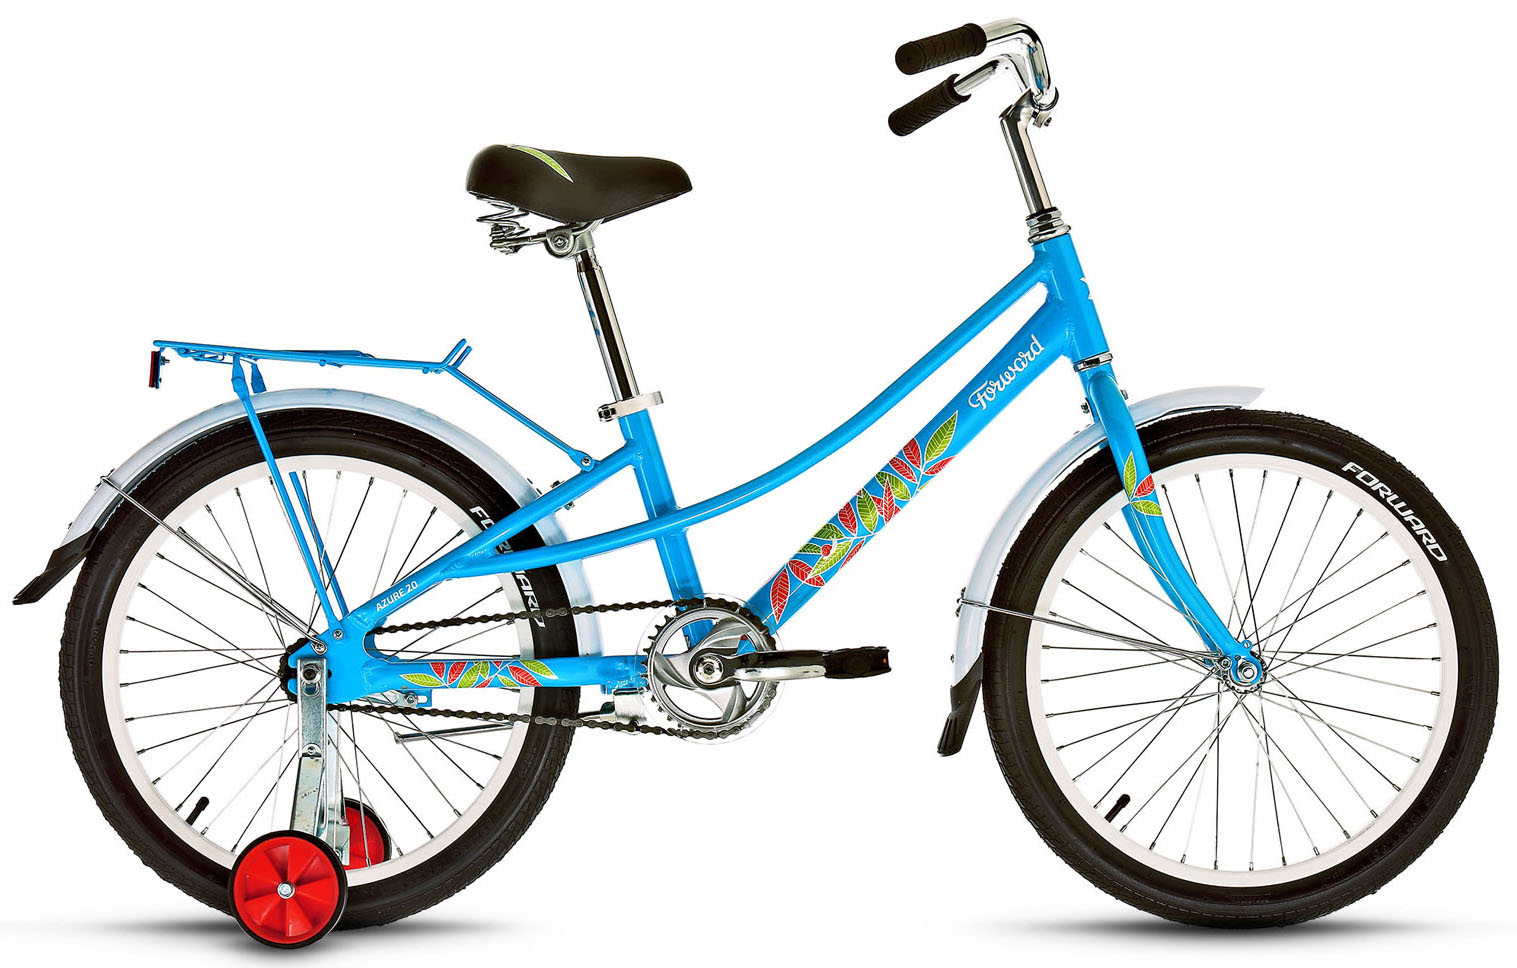  Отзывы о Детском велосипеде Forward Azure 20 2019